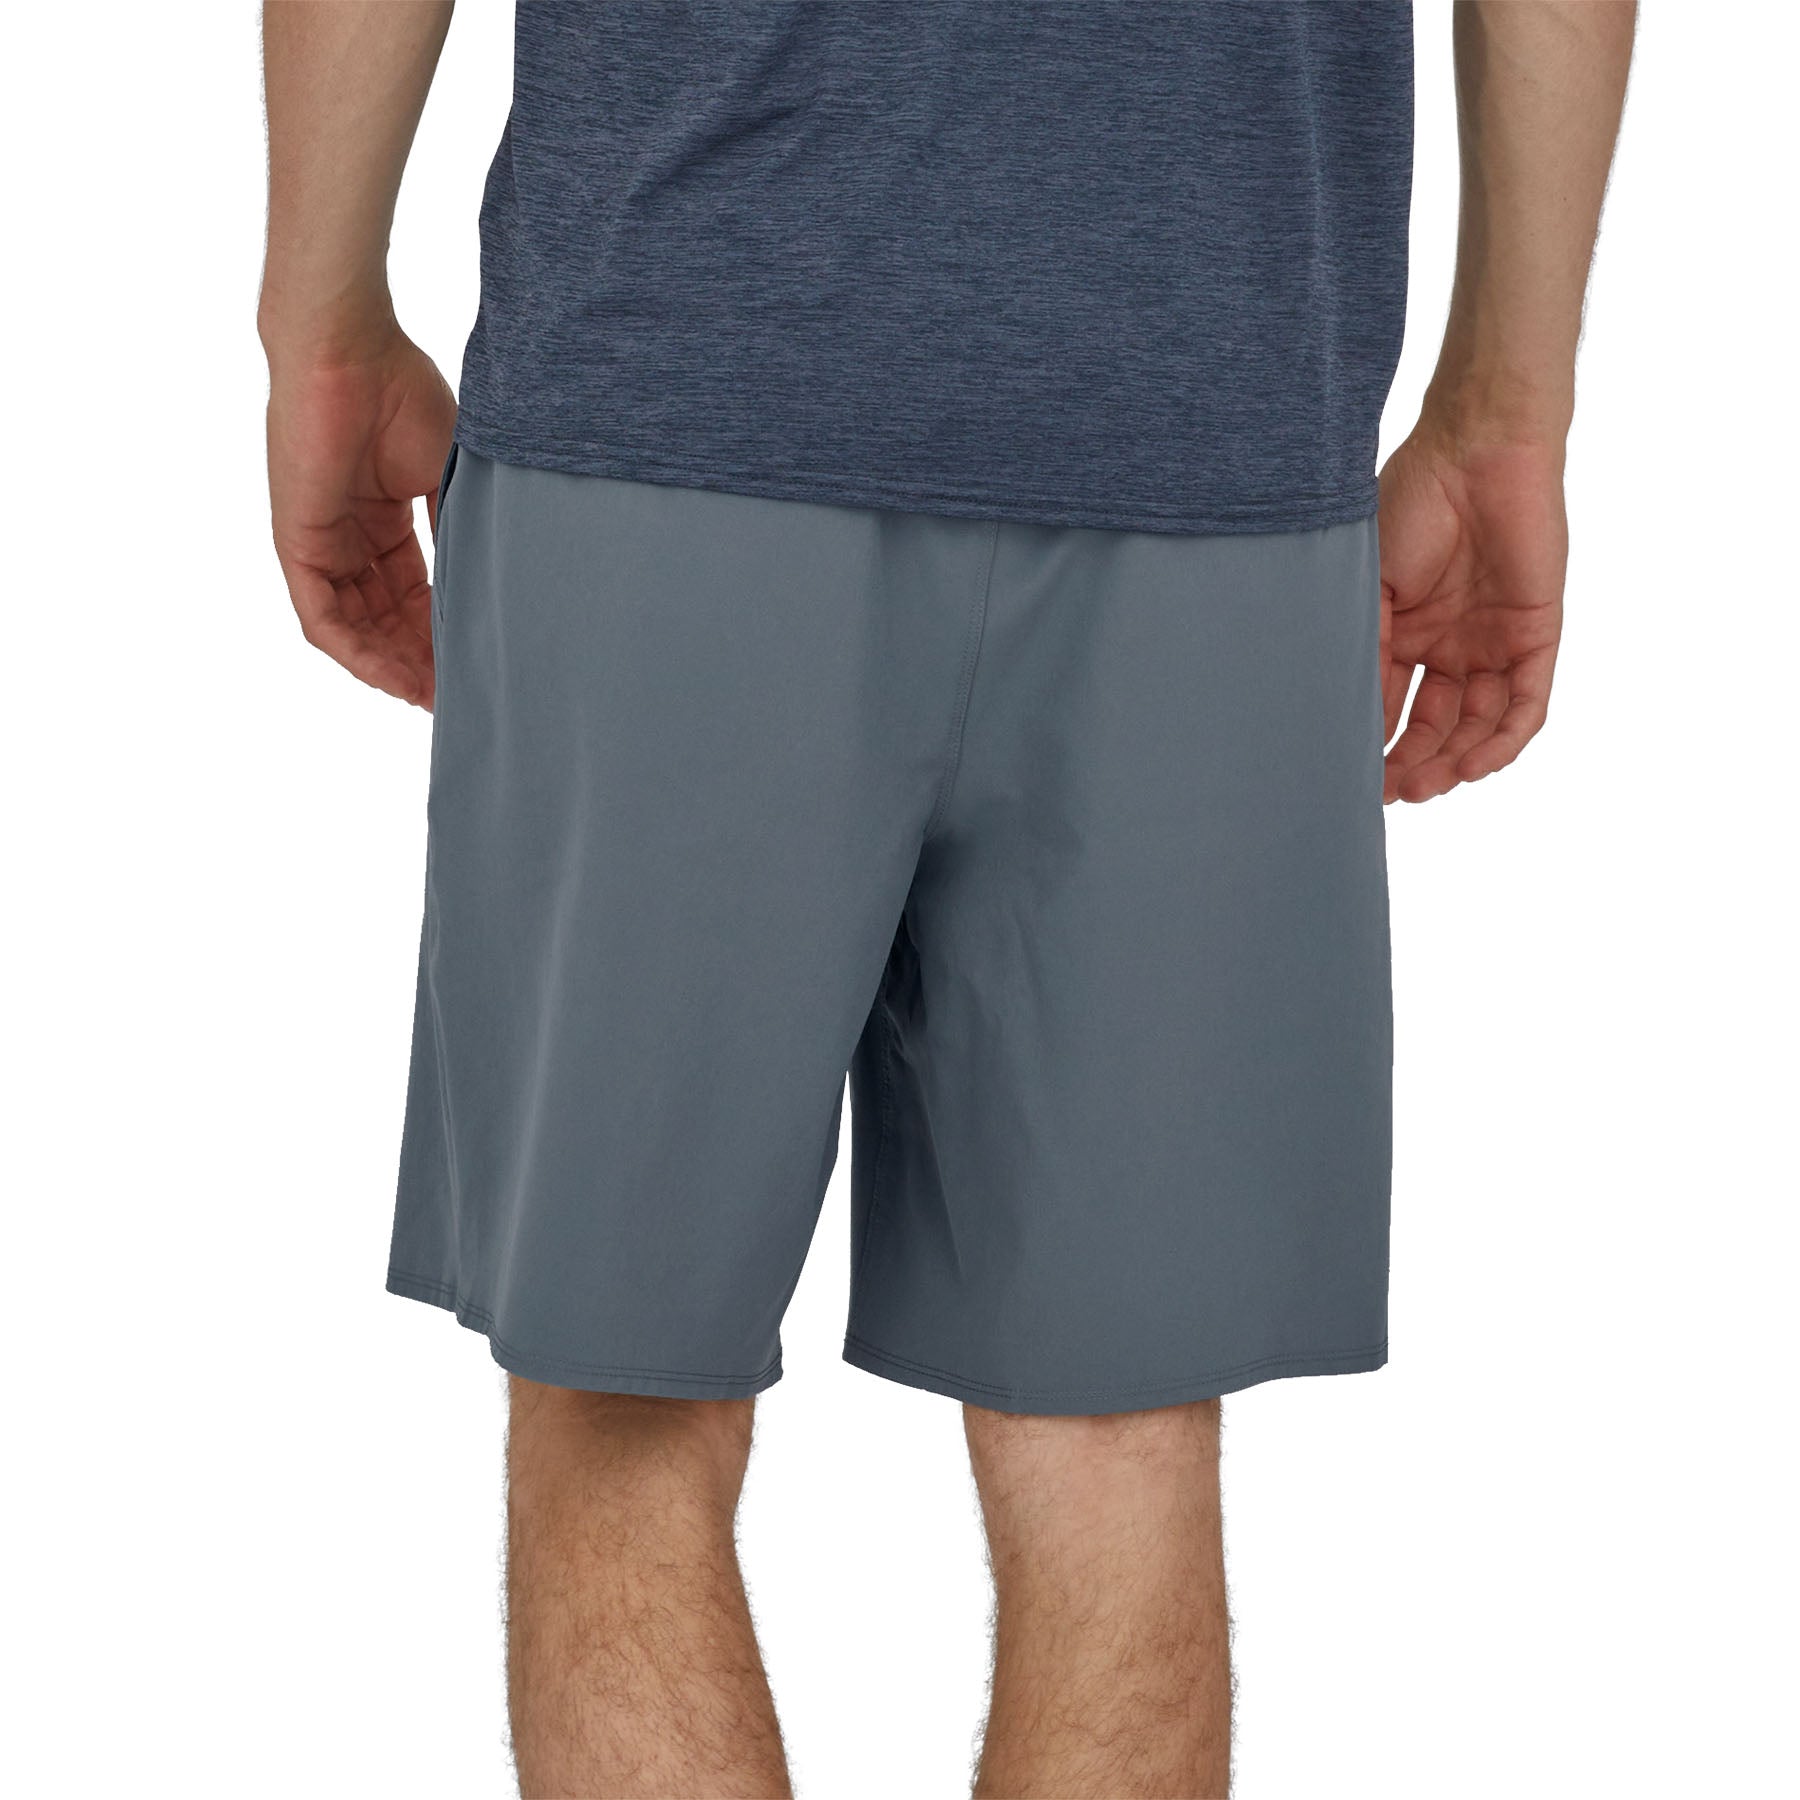 Men's Hydropeak Hybrid Walk Shorts - 19"